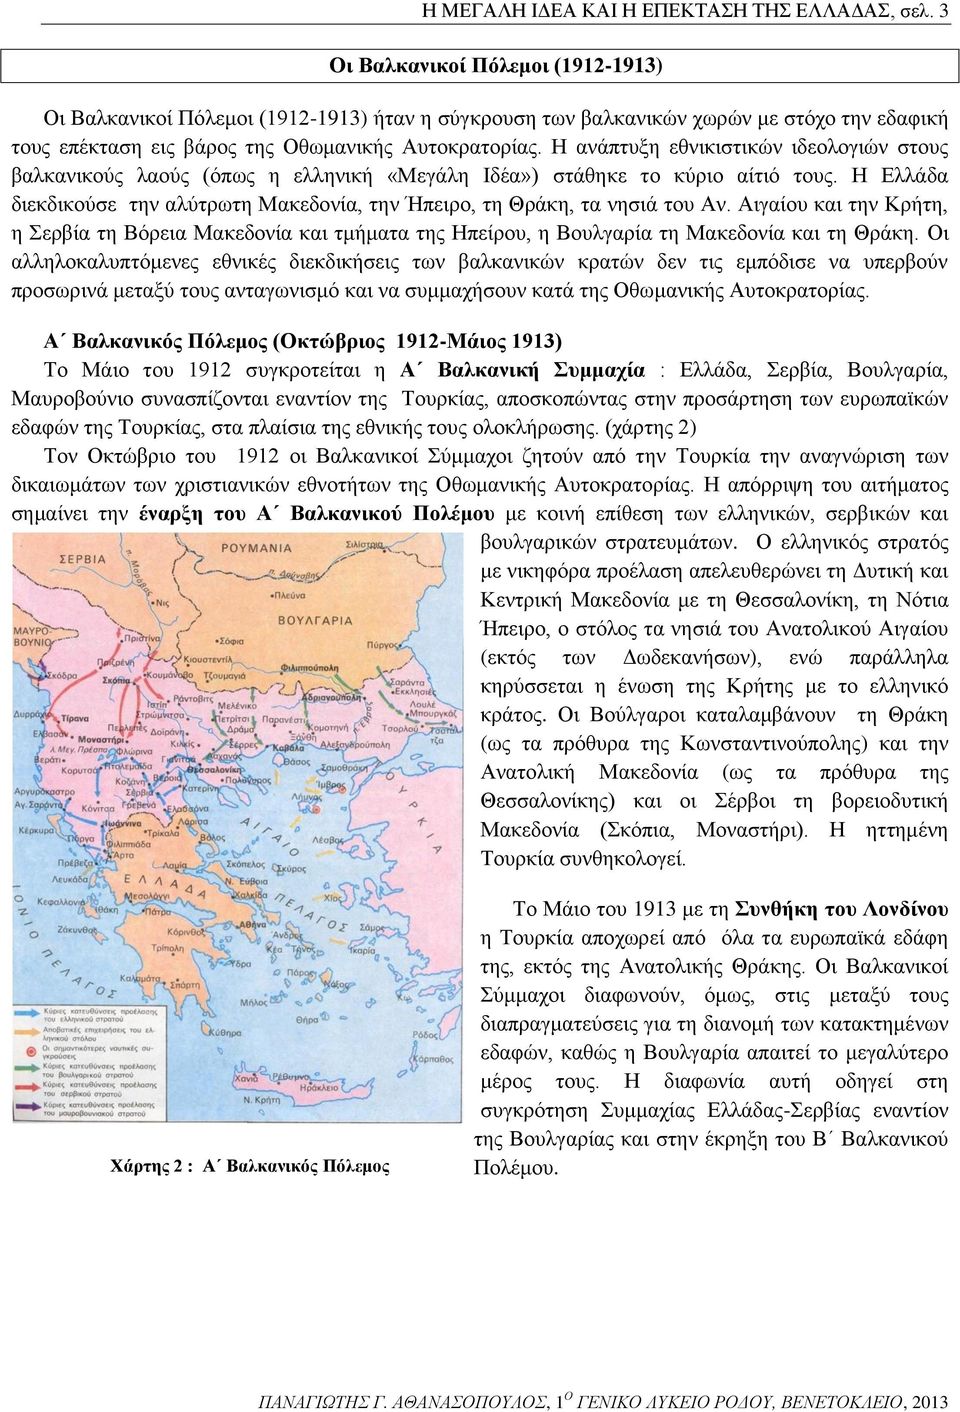 Η ανάπτυξη εθνικιστικών ιδεολογιών στους βαλκανικούς λαούς (όπως η ελληνική «Μεγάλη Ιδέα») στάθηκε το κύριο αίτιό τους.